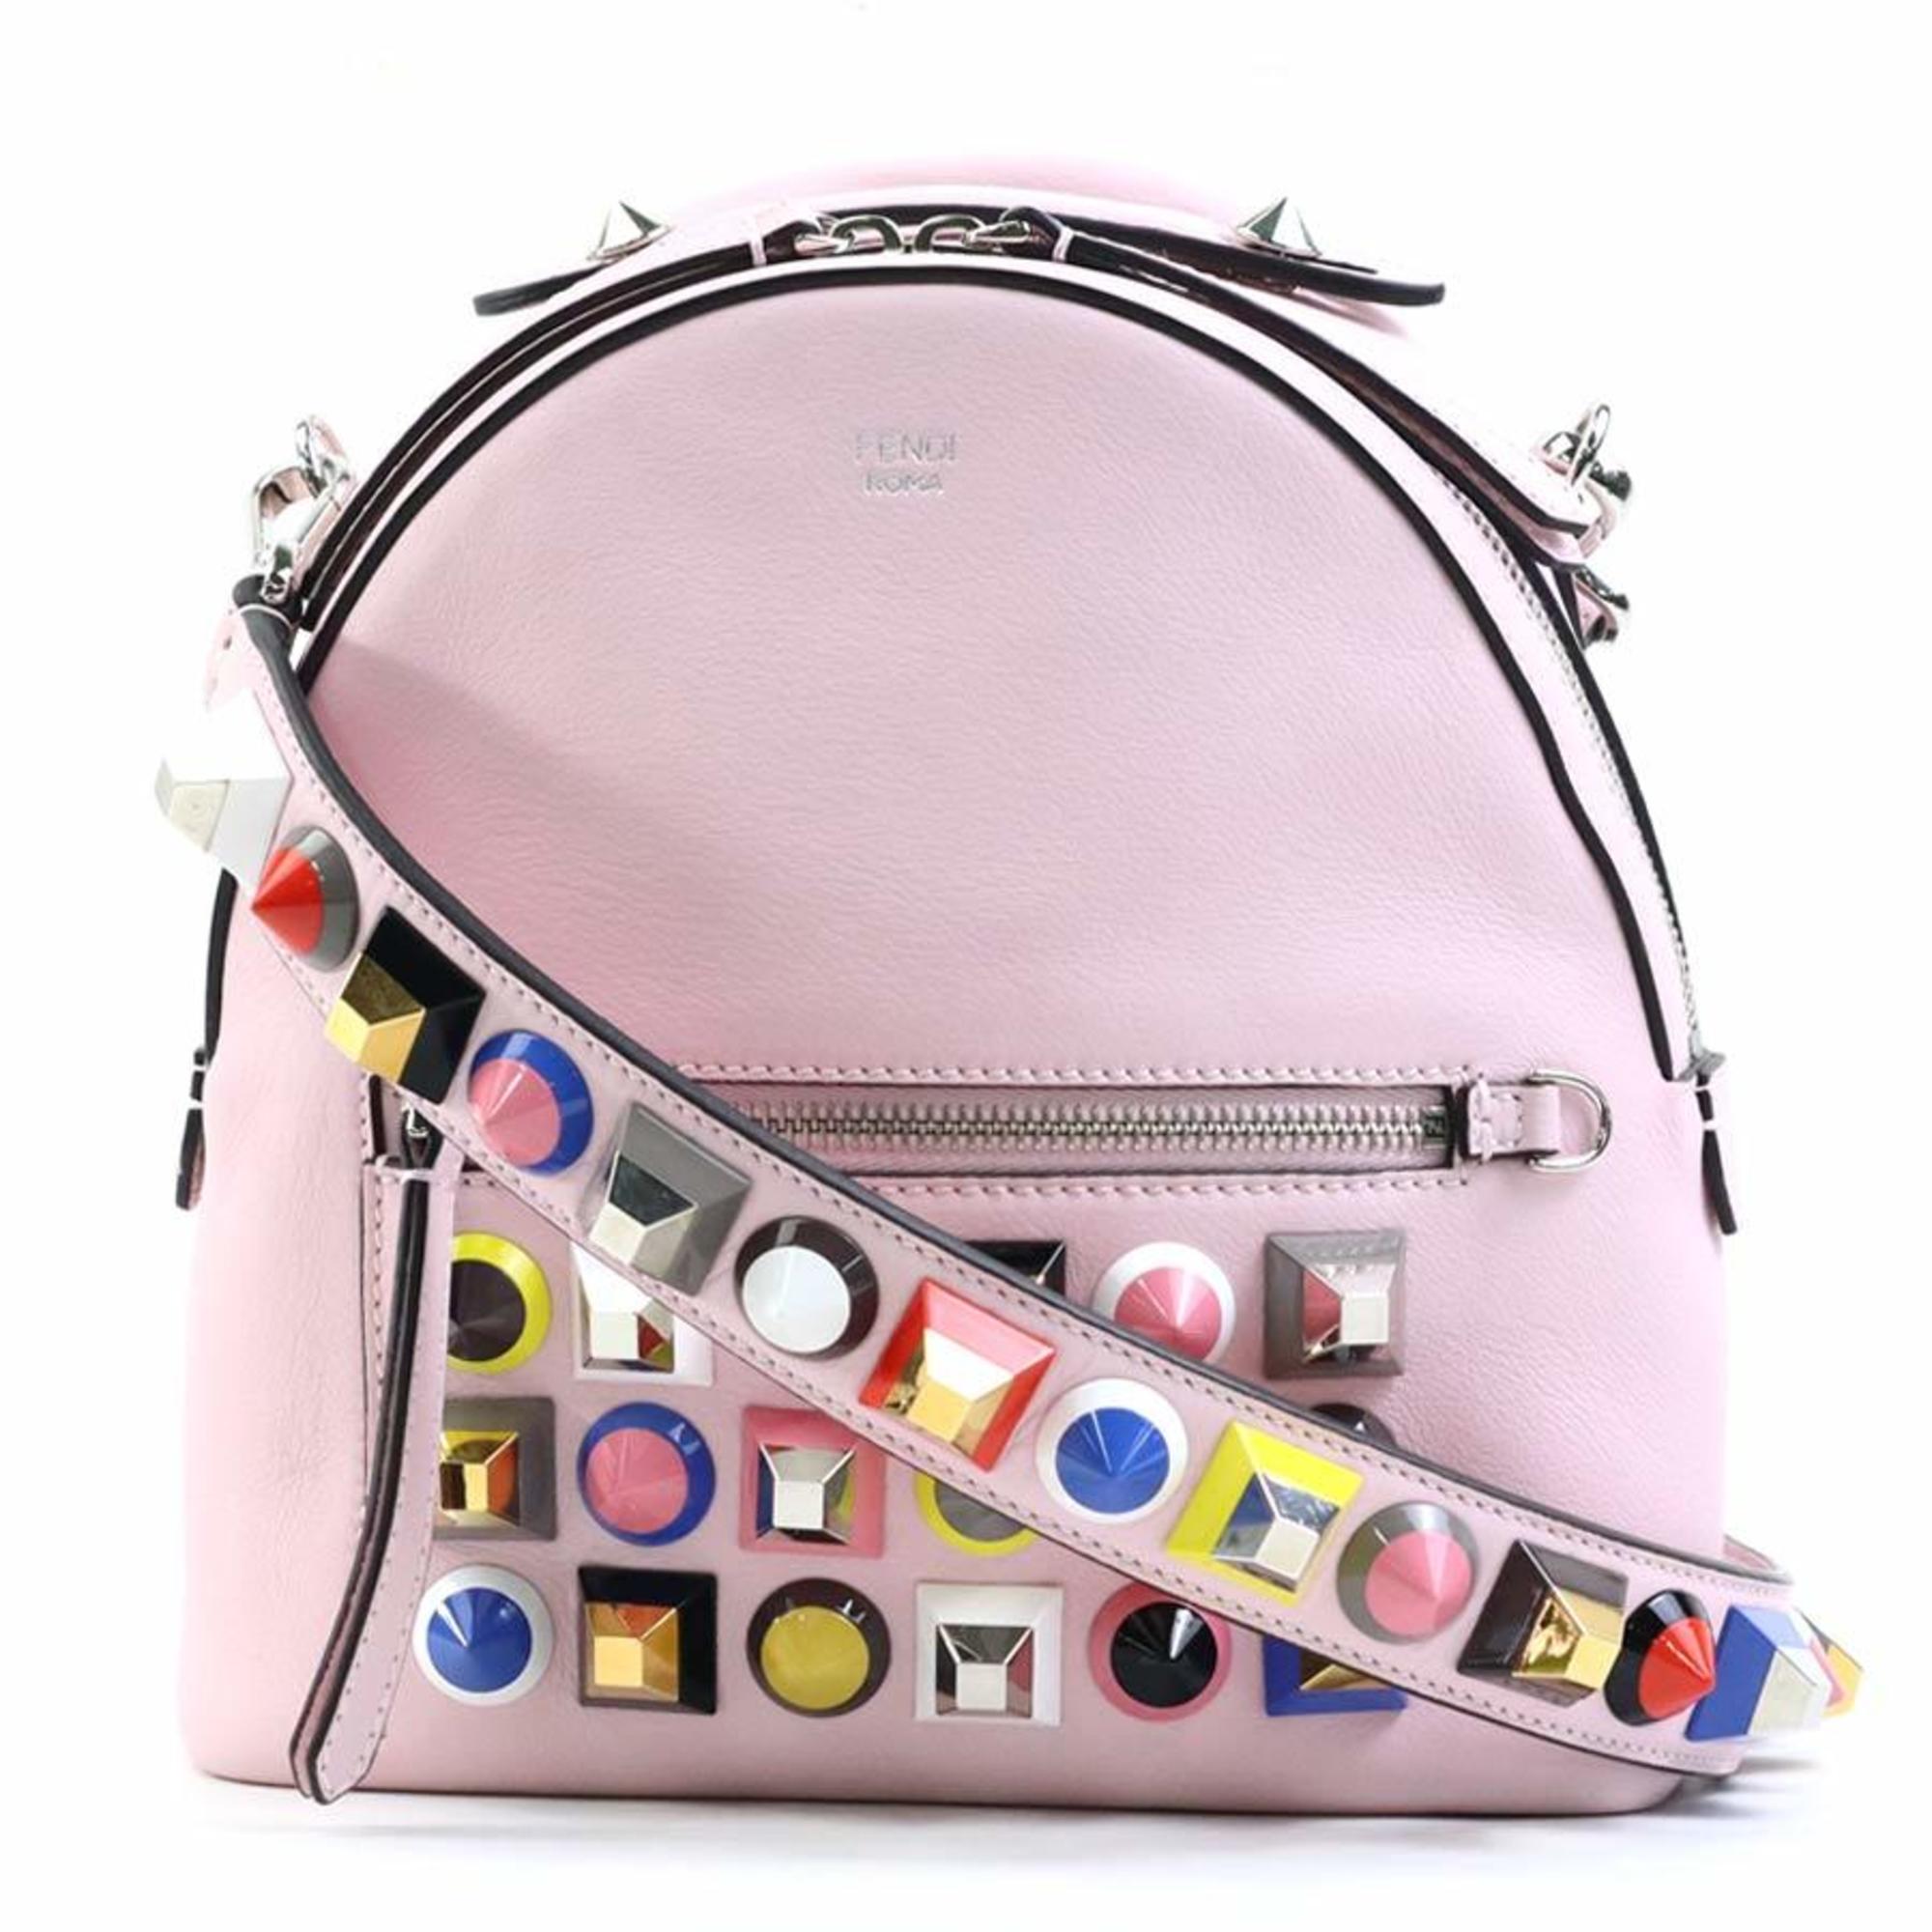 FENDI Crossbody Shoulder Bag Leather/Studded Light Pink/Multicolor Women's